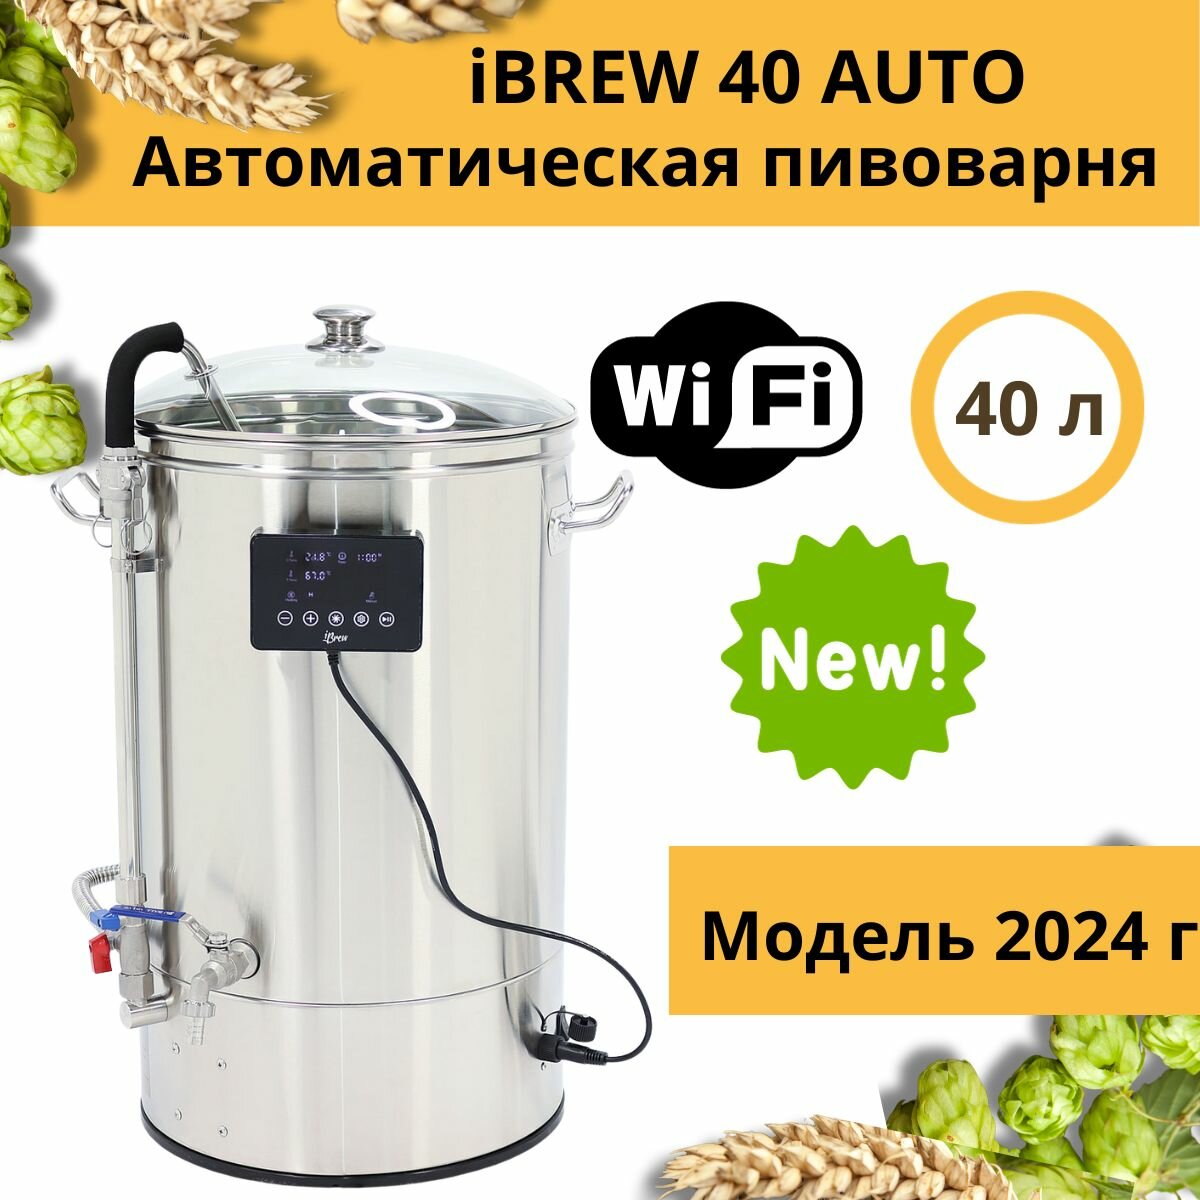 Автоматическая домашняя пивоварня сусловарня iBrew 40 Auto без чиллера, модель 2024 года с WIFI